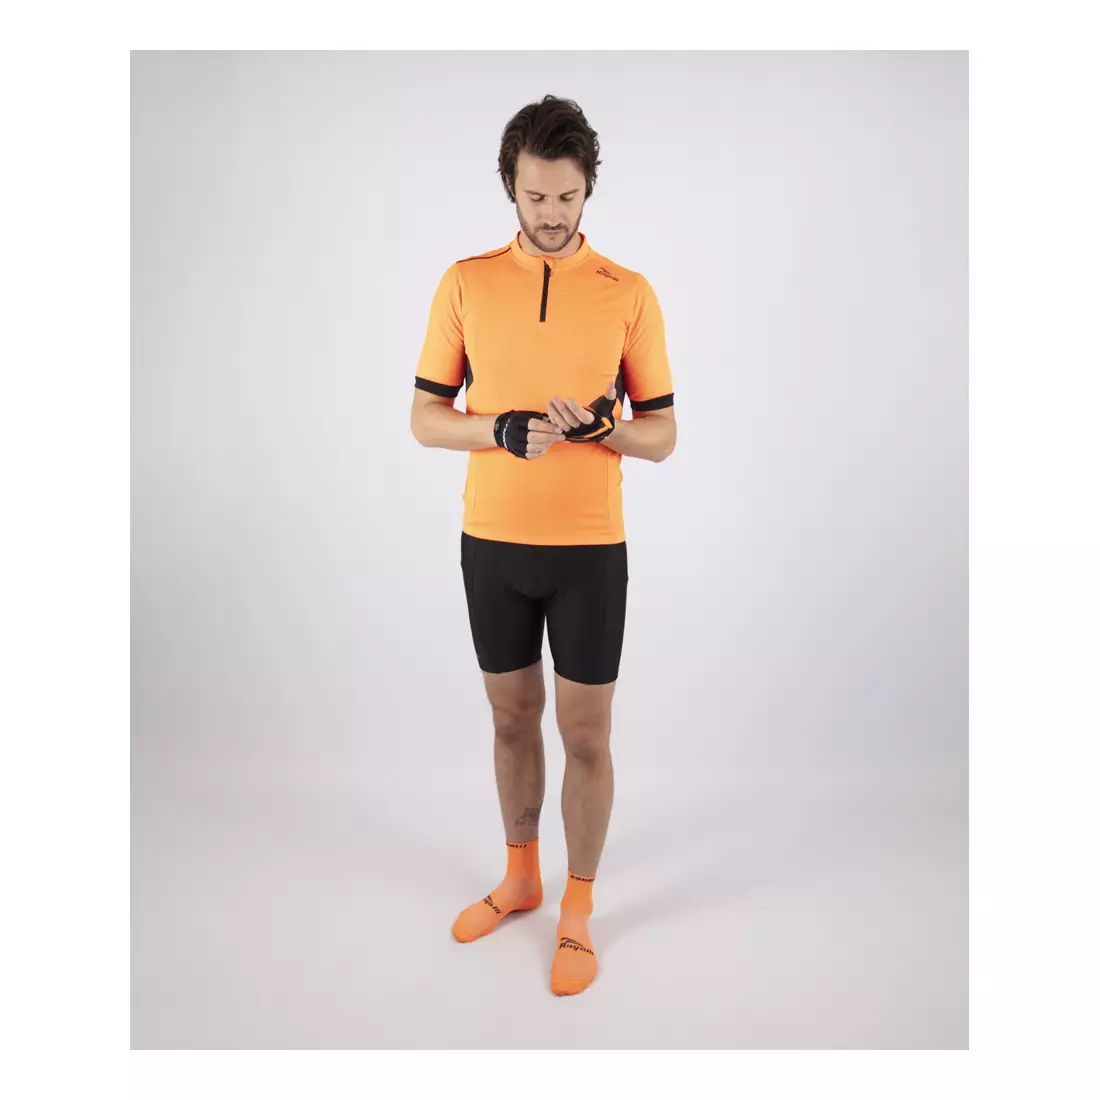 ROGELLI PERUGIA 2.0 tricou de ciclism pentru bărbați, portocaliu